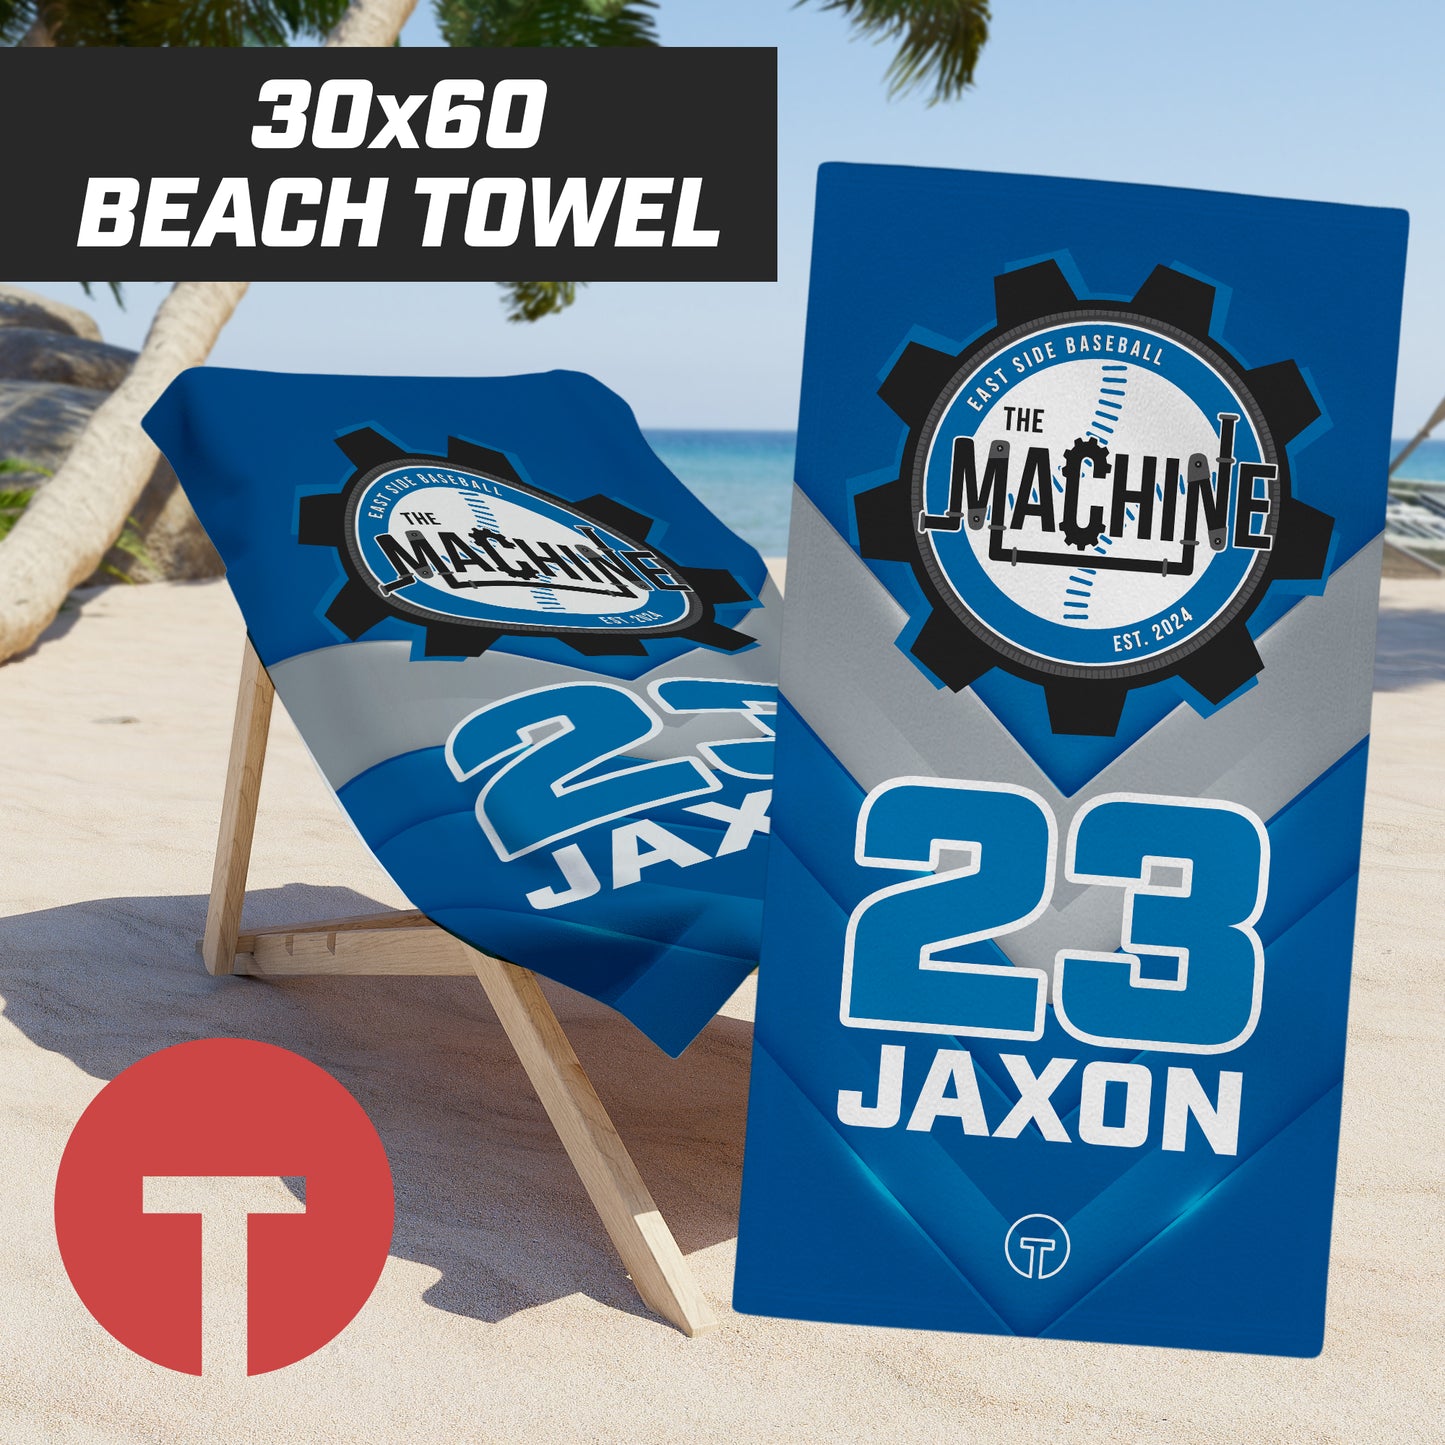 East Side Machine Baseball - 30"x60" Beach Towel